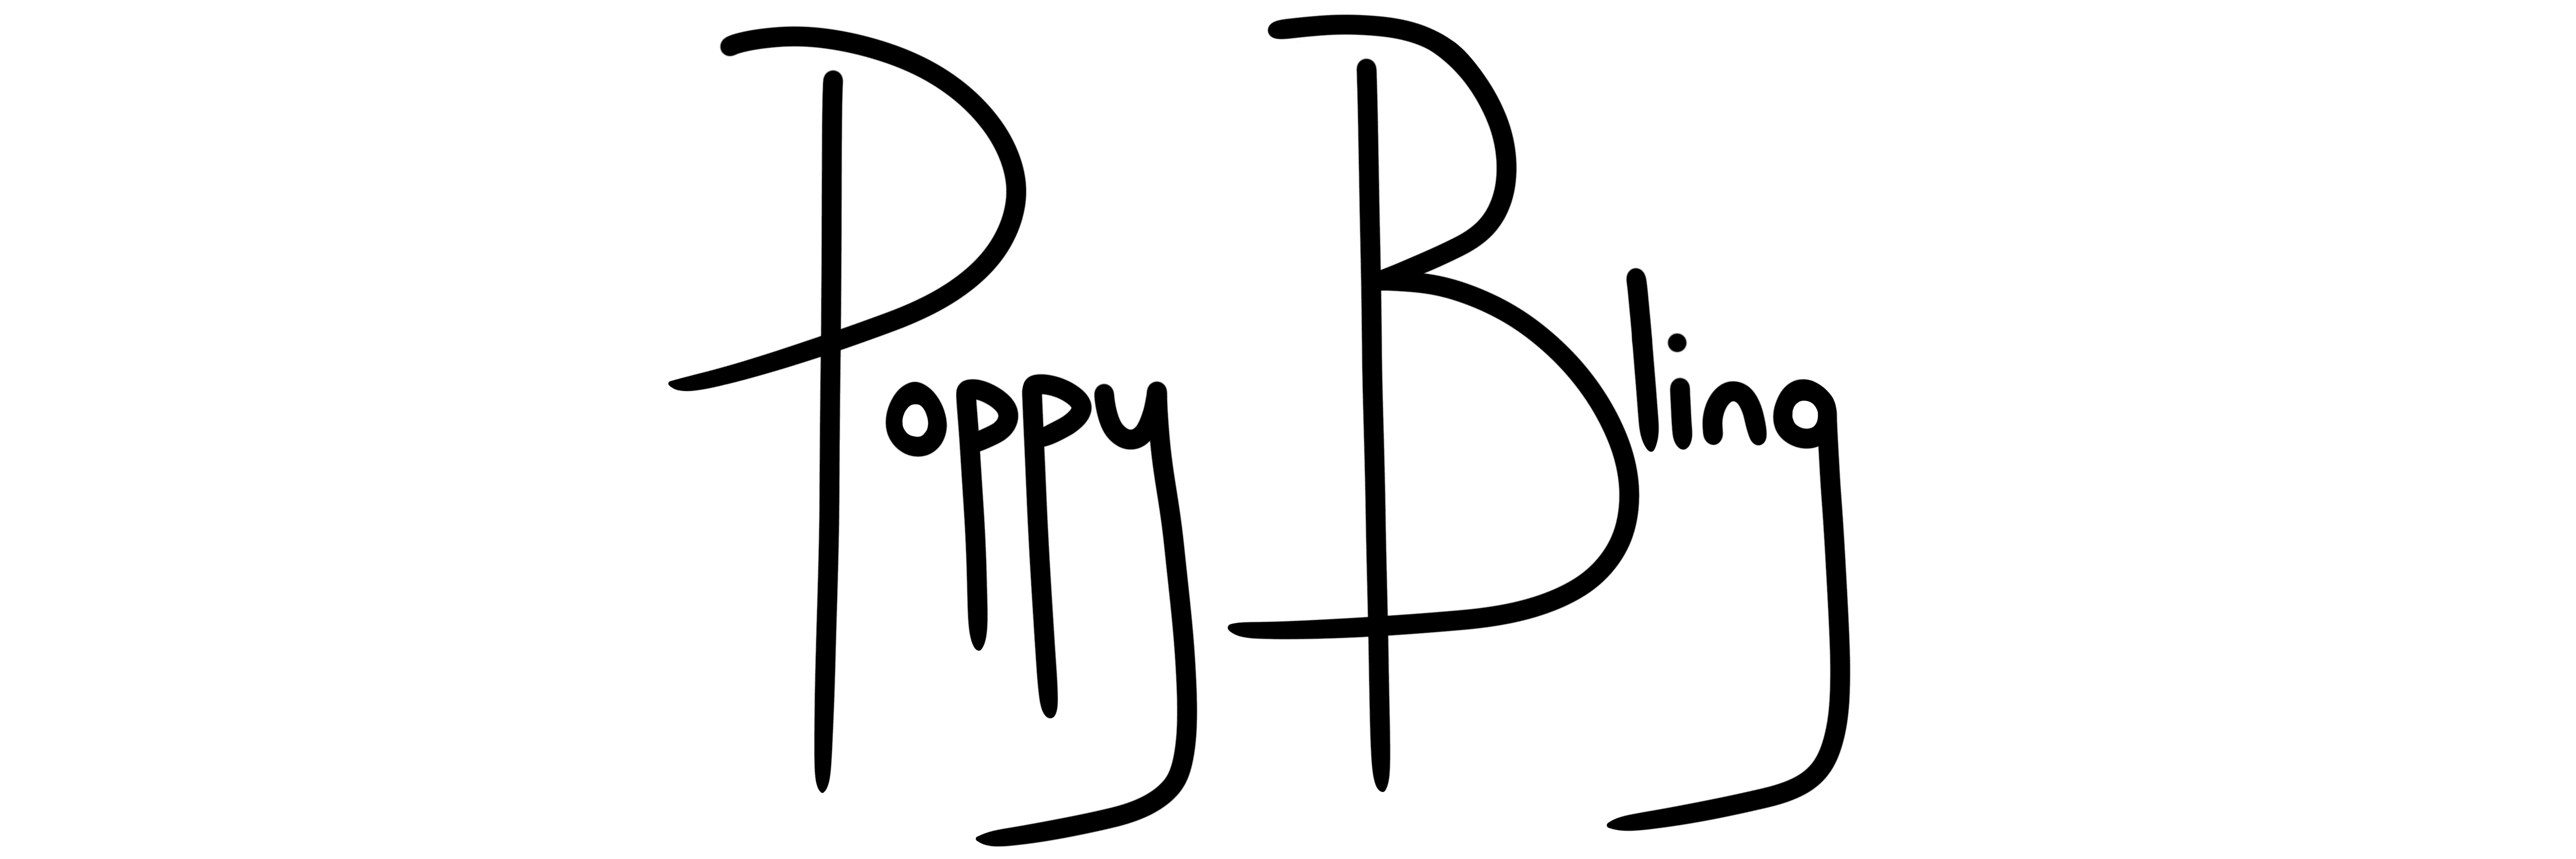 Poppy Bling